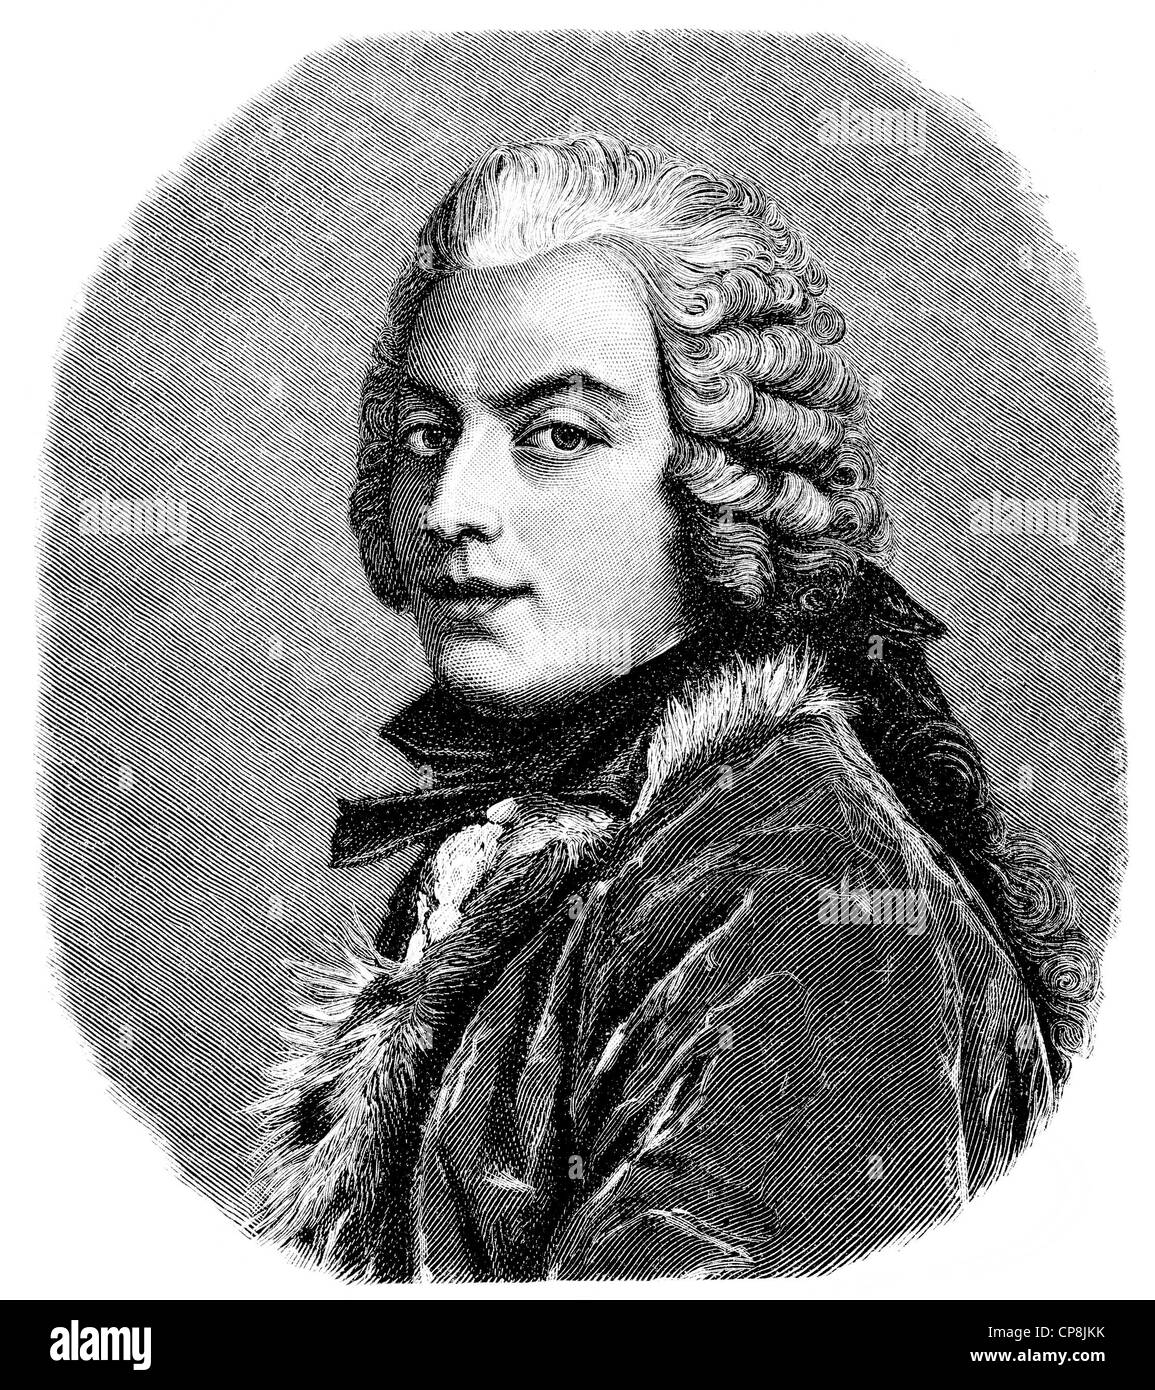 Francesco Algarotti Count, 1712 - 1764, un écrivain italien, critique d'art et marchand de l'Aufklärung, Historische Digitalkunst Banque D'Images